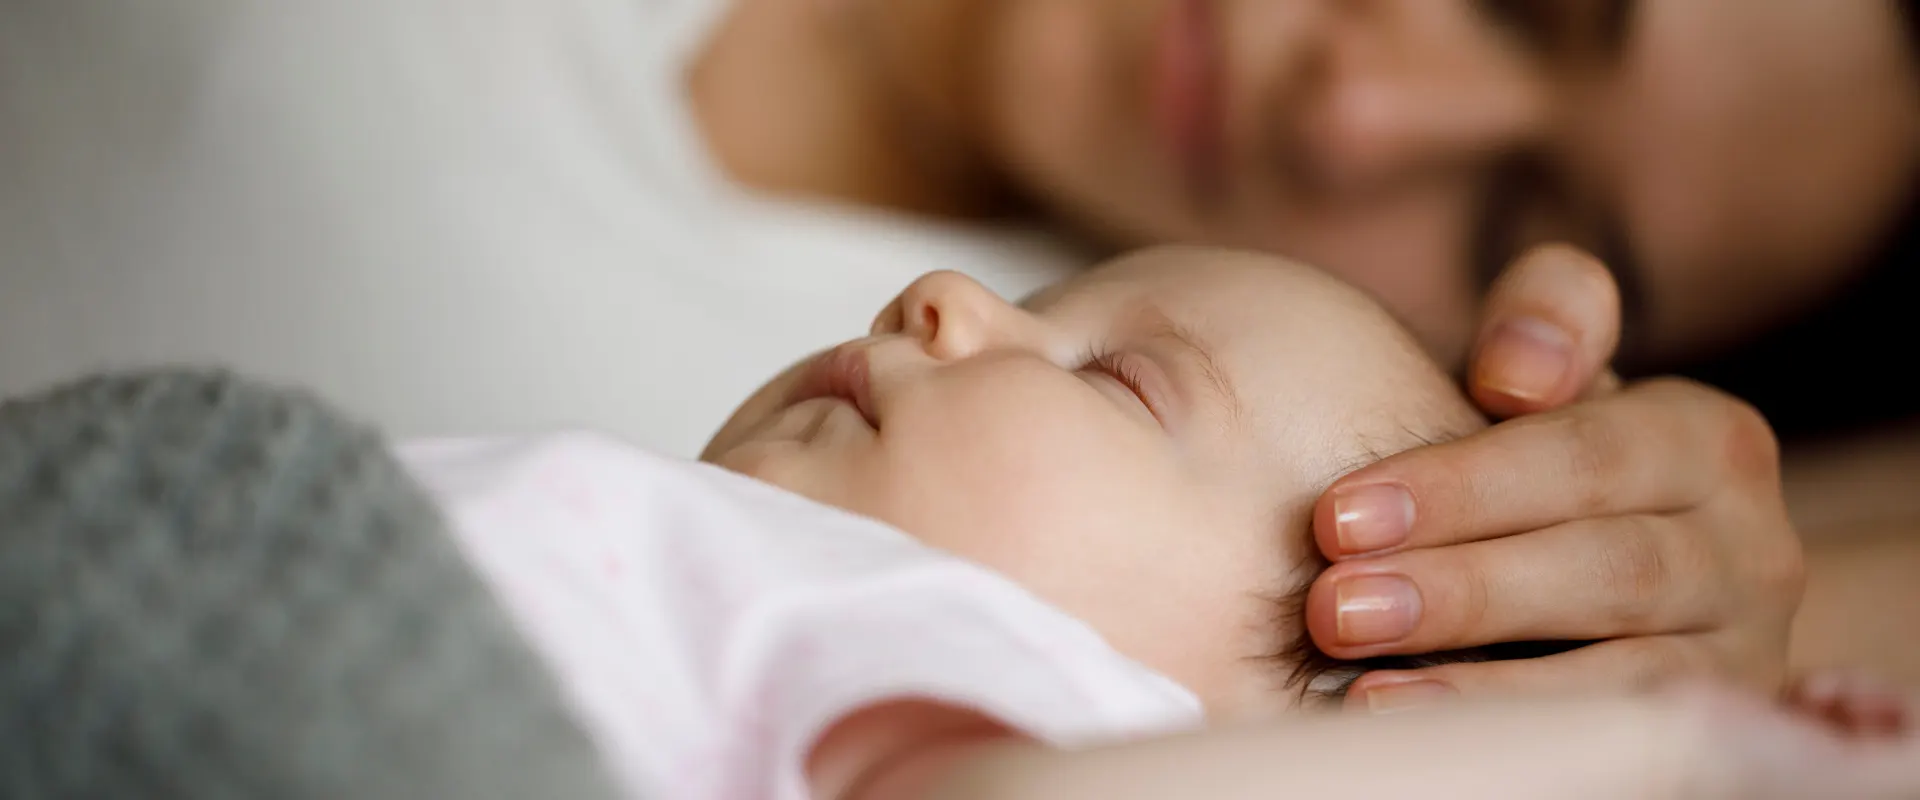 Come far addormentare un neonato: consigli pratici e utili